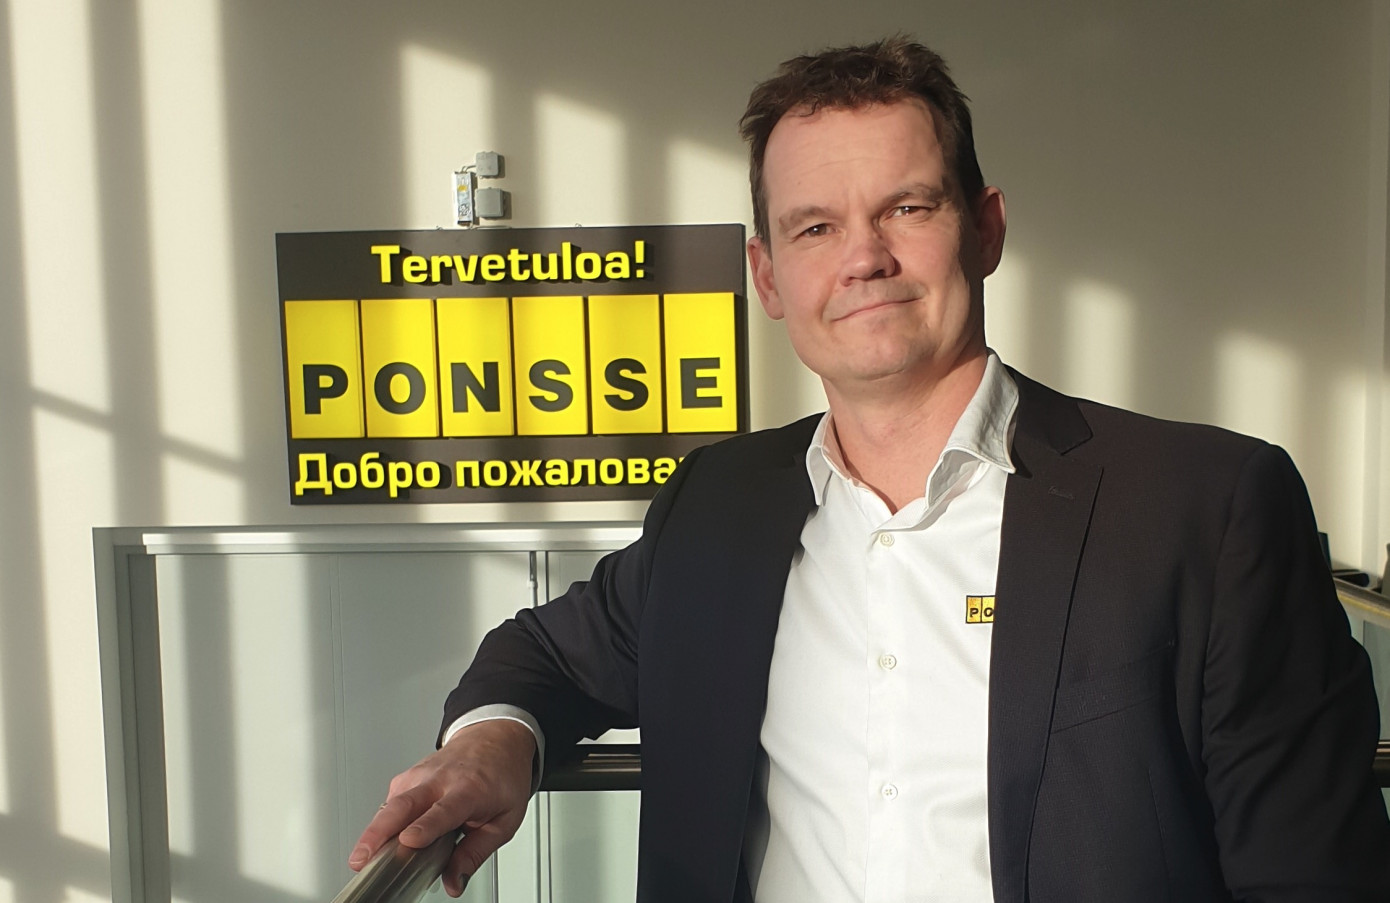 Яакко Лаурила, генеральный директор ООО «Понссе»: Россия стала крупнейшим в мире рынком сбыта для Ponsse